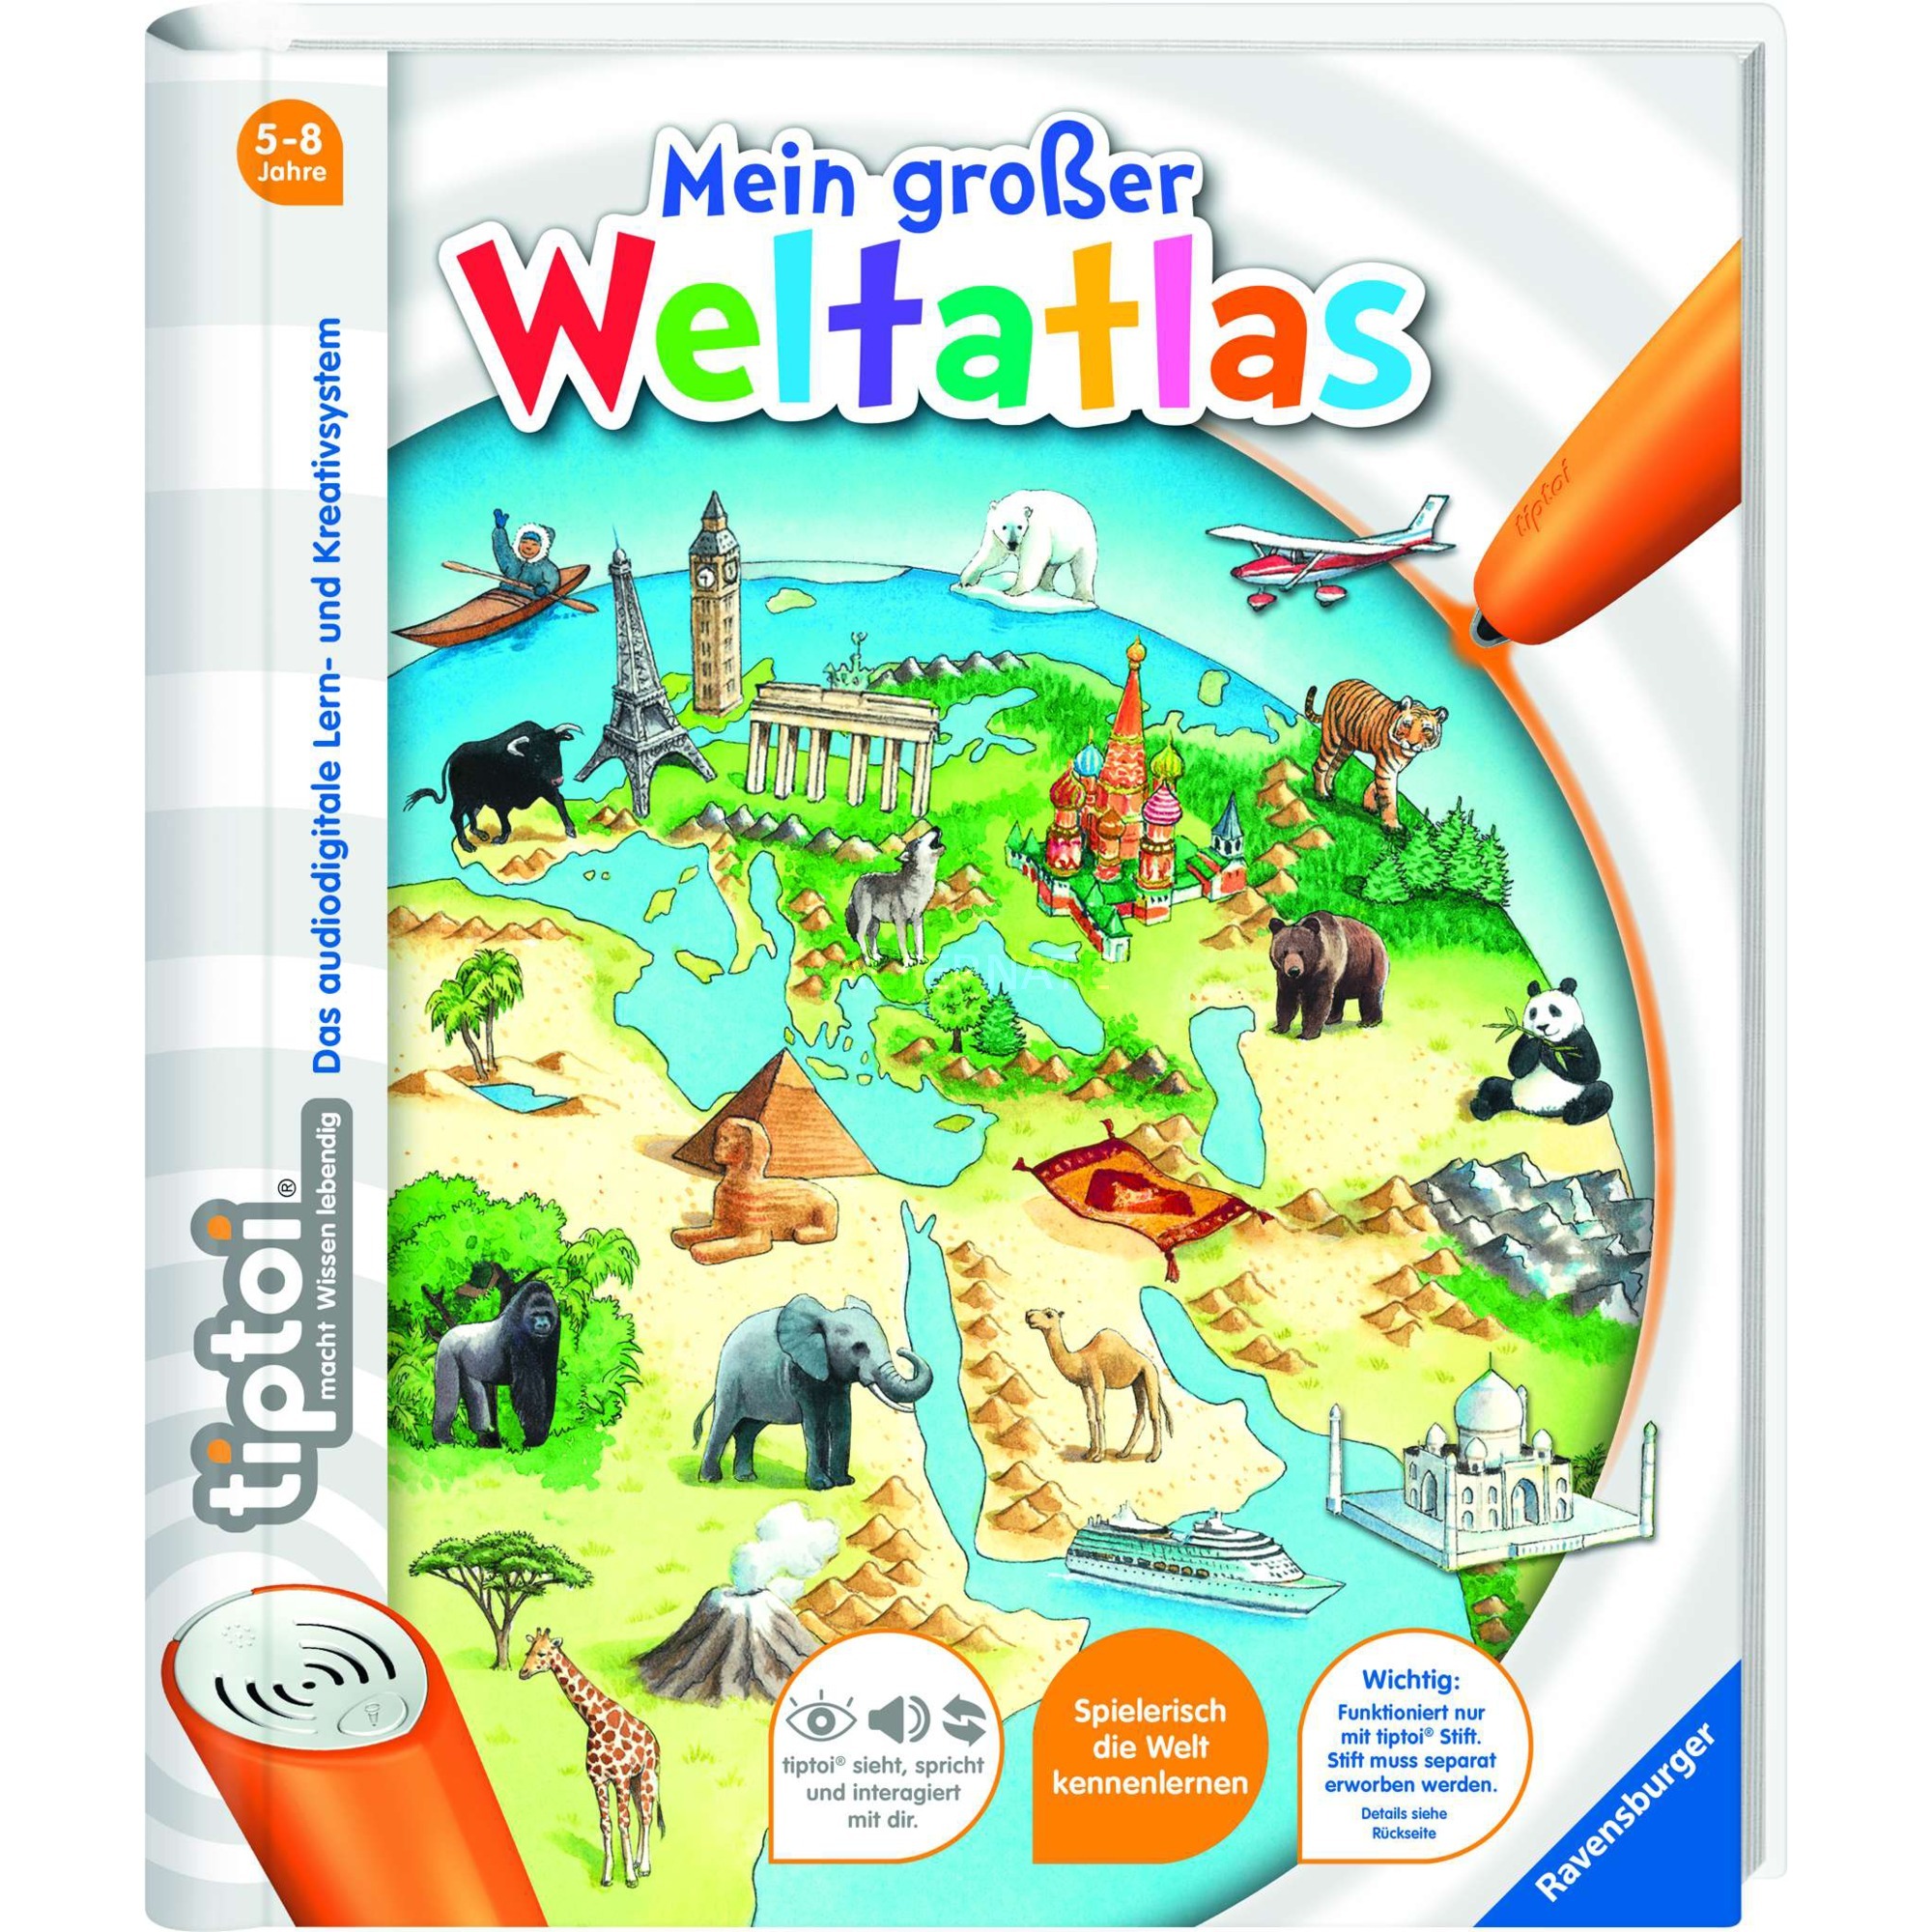 Image of Alternate - tiptoi Mein großer Weltatlas, Lernbuch online einkaufen bei Alternate